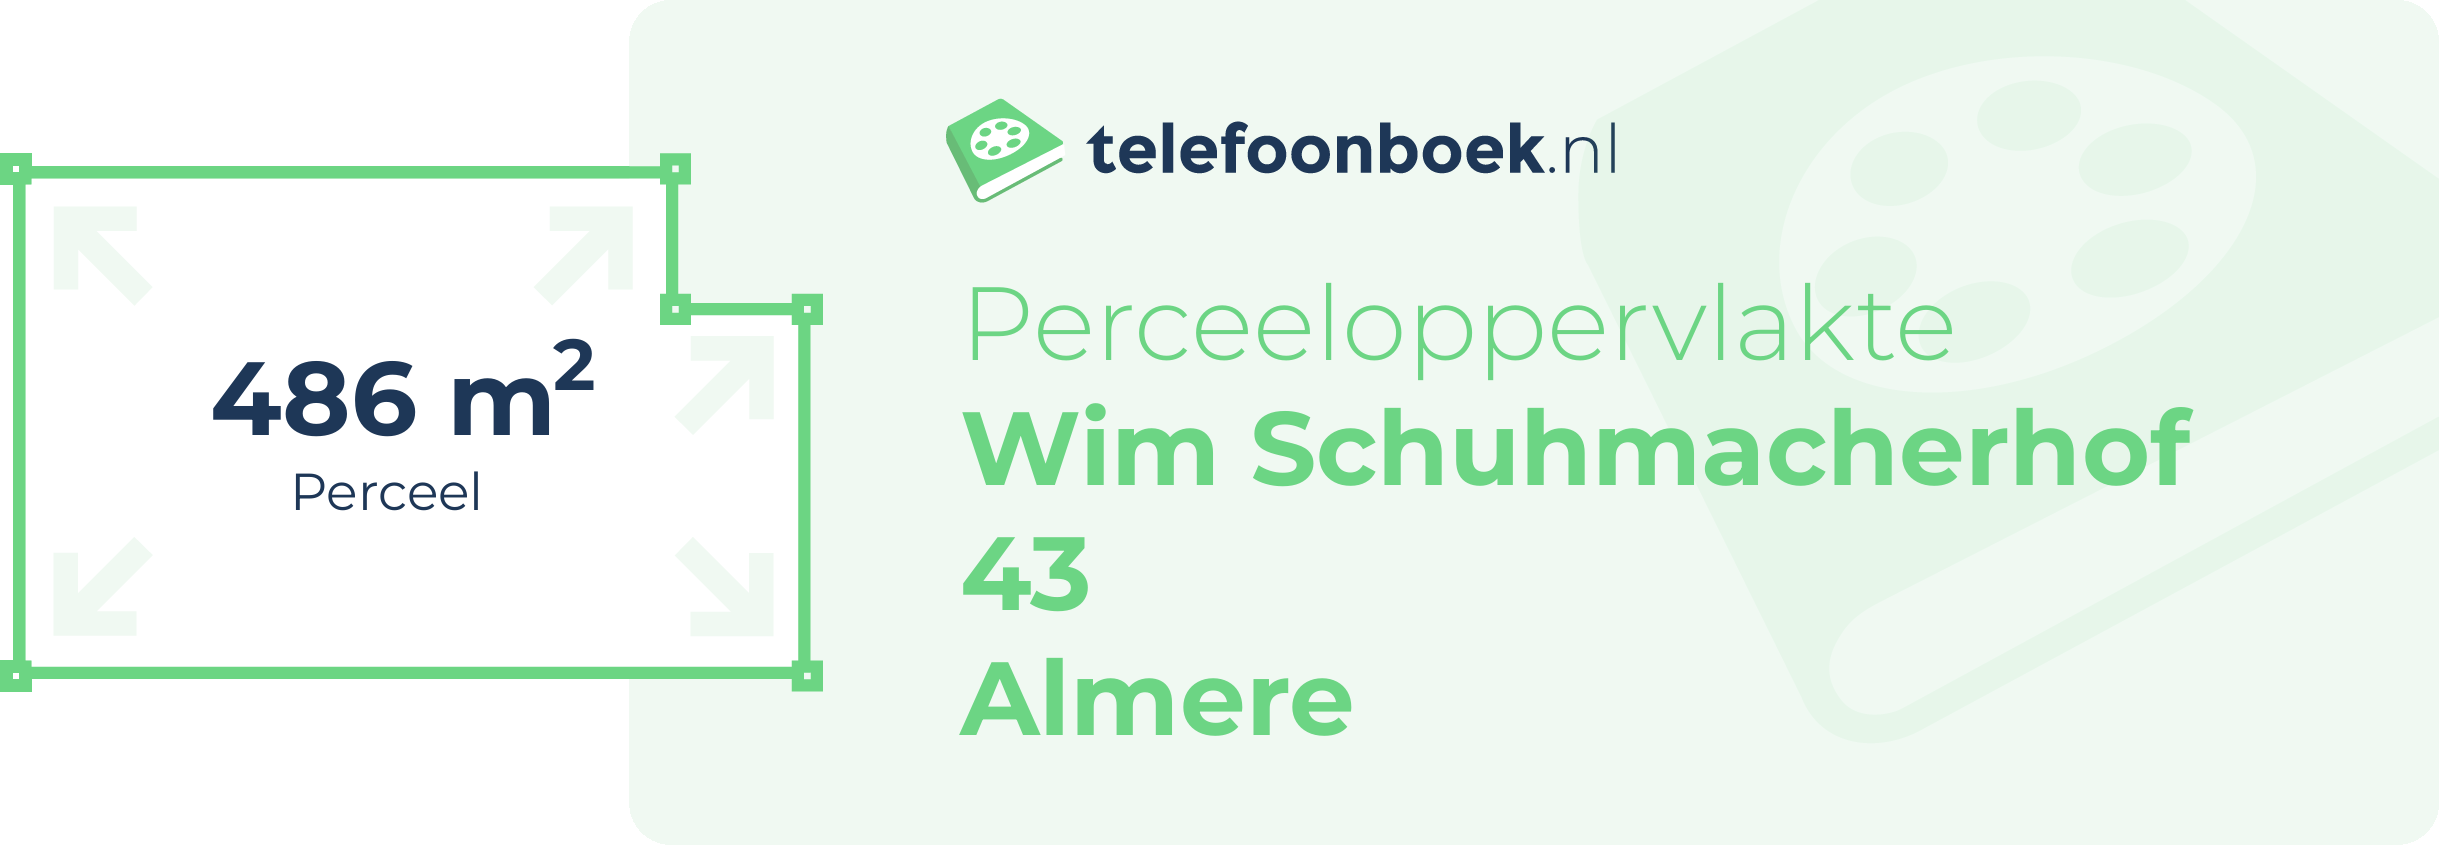 Perceeloppervlakte Wim Schuhmacherhof 43 Almere